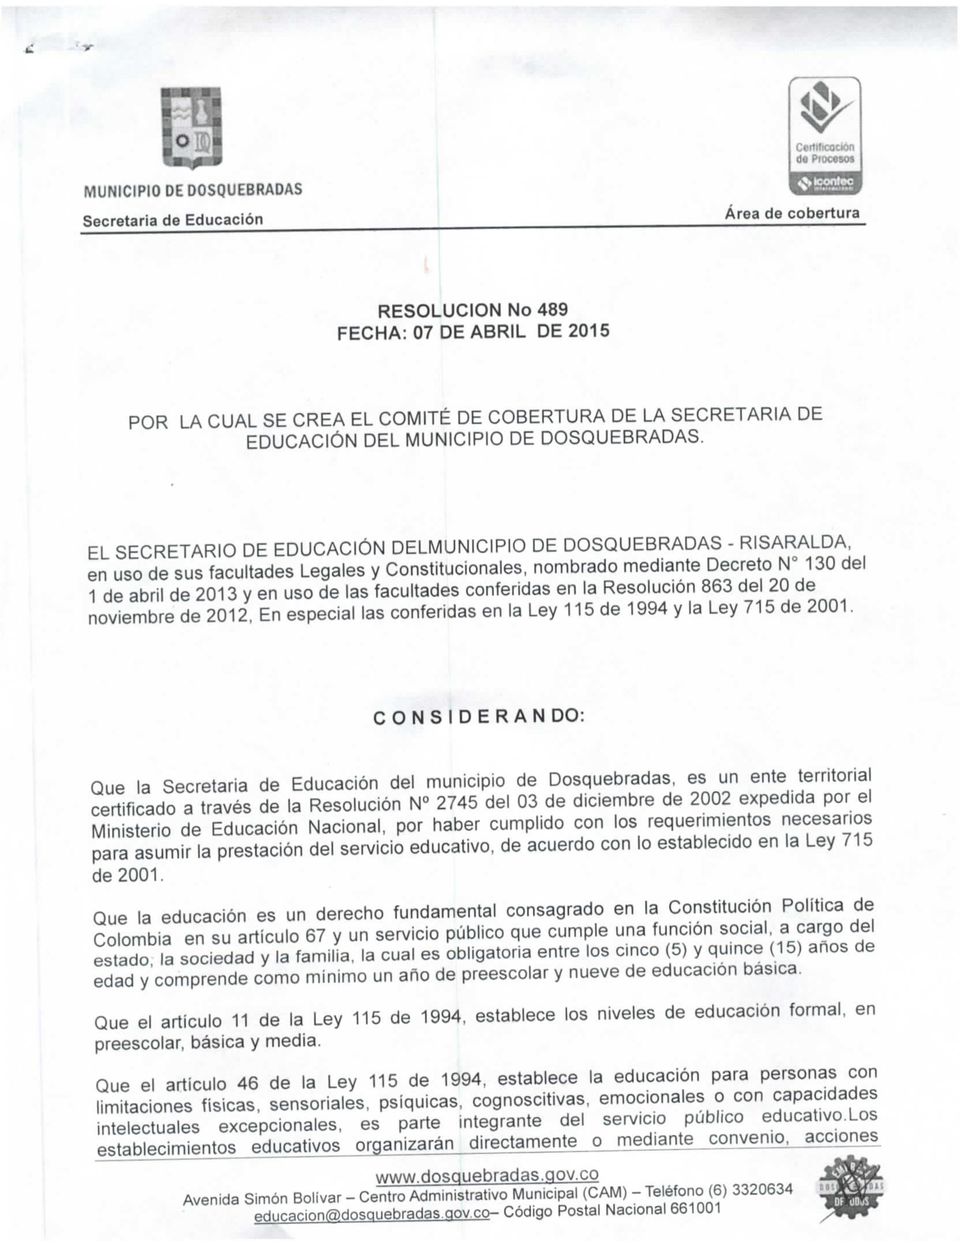 EL SECRETARIO DE EDUCACIÓN DELMUNICIPIO DE DOSQUEBRADAS - RISARALDA, en uso de sus facultades Legales y Constitucionales, nombrado mediante Decreto N 130 del 1 de abril de 2013 y en uso de las